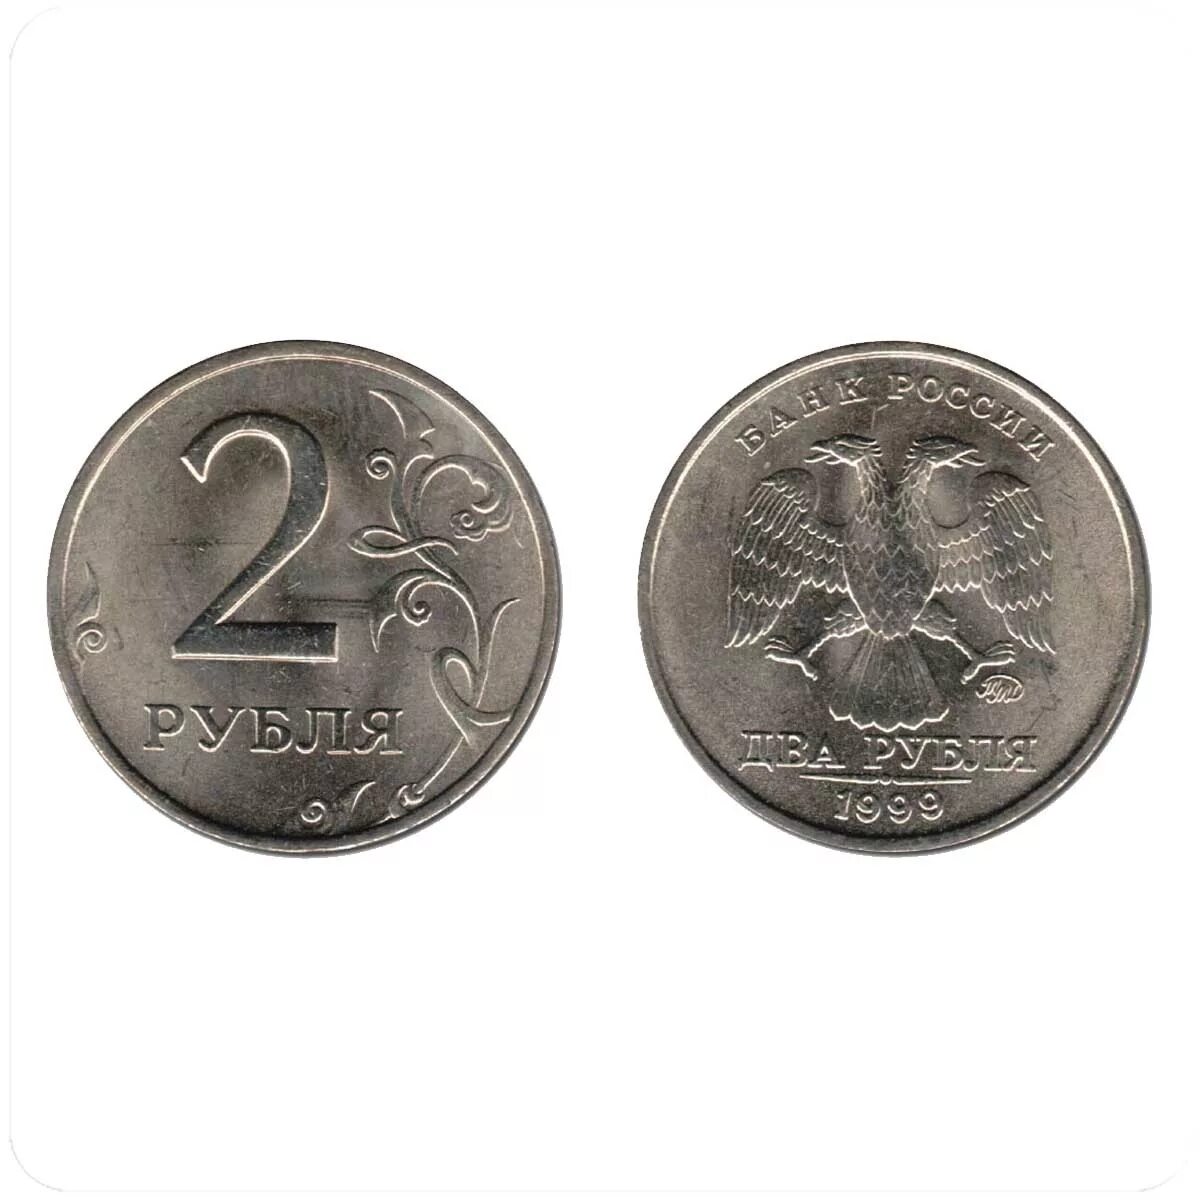 Купить рубли москве. 2 Рубля 1999 года СПМД. 2 Рубля 1999 года ММД. Редкие монеты 2 рубля 1997. 2руб 1999г.